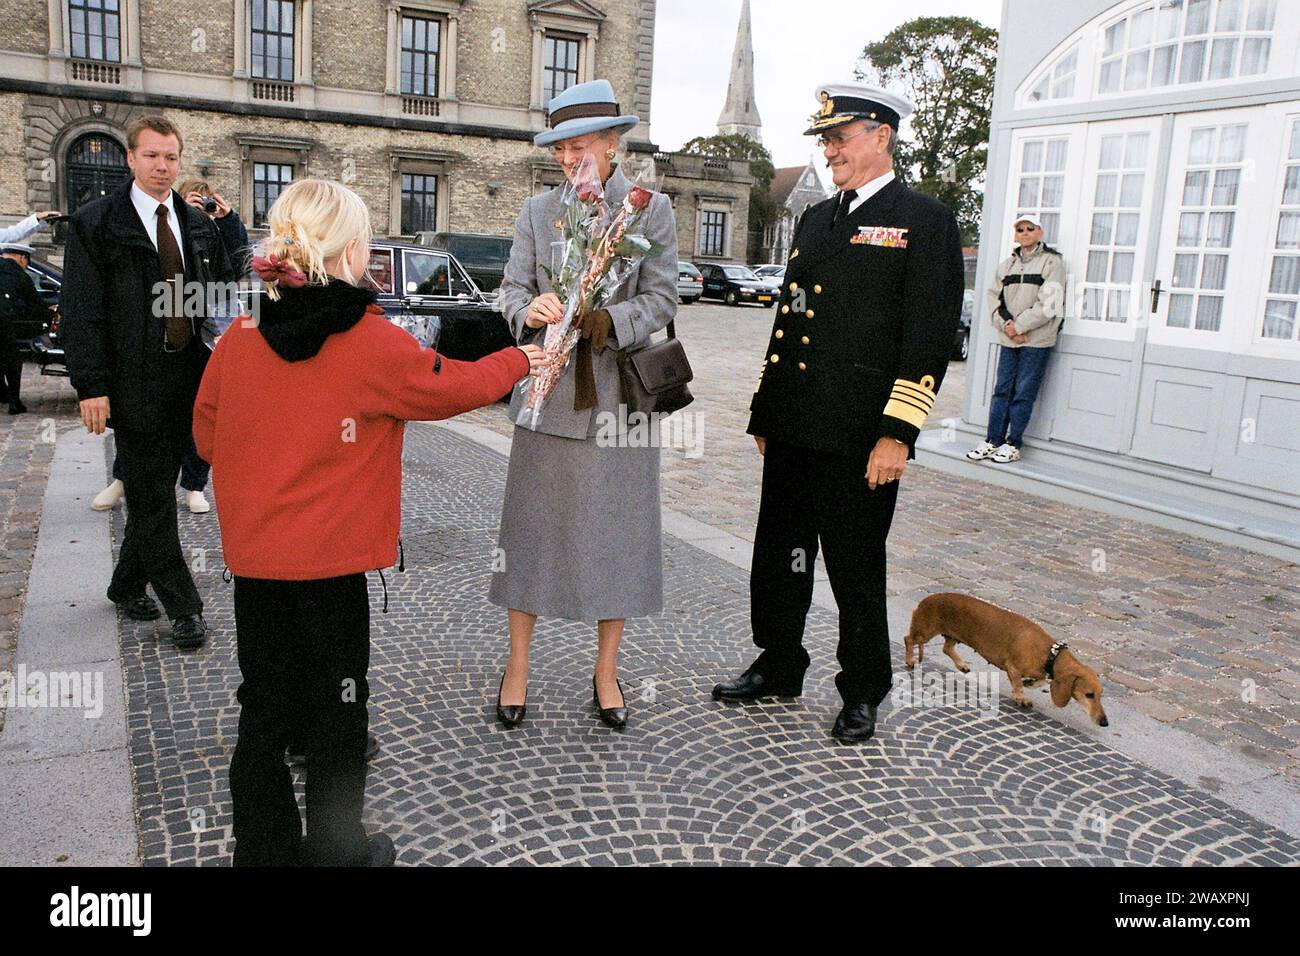 Copenaghen, Danimarca /21 SETTEMBRE 2004/ H.M.la regina Margrethe II di Danimarca, il principe henrik o Henri arriva sali sulla nave Dannebrog nella capitale danese Copenaghen. Foto: Francis Joseph Dean/Dean Pictures Foto Stock